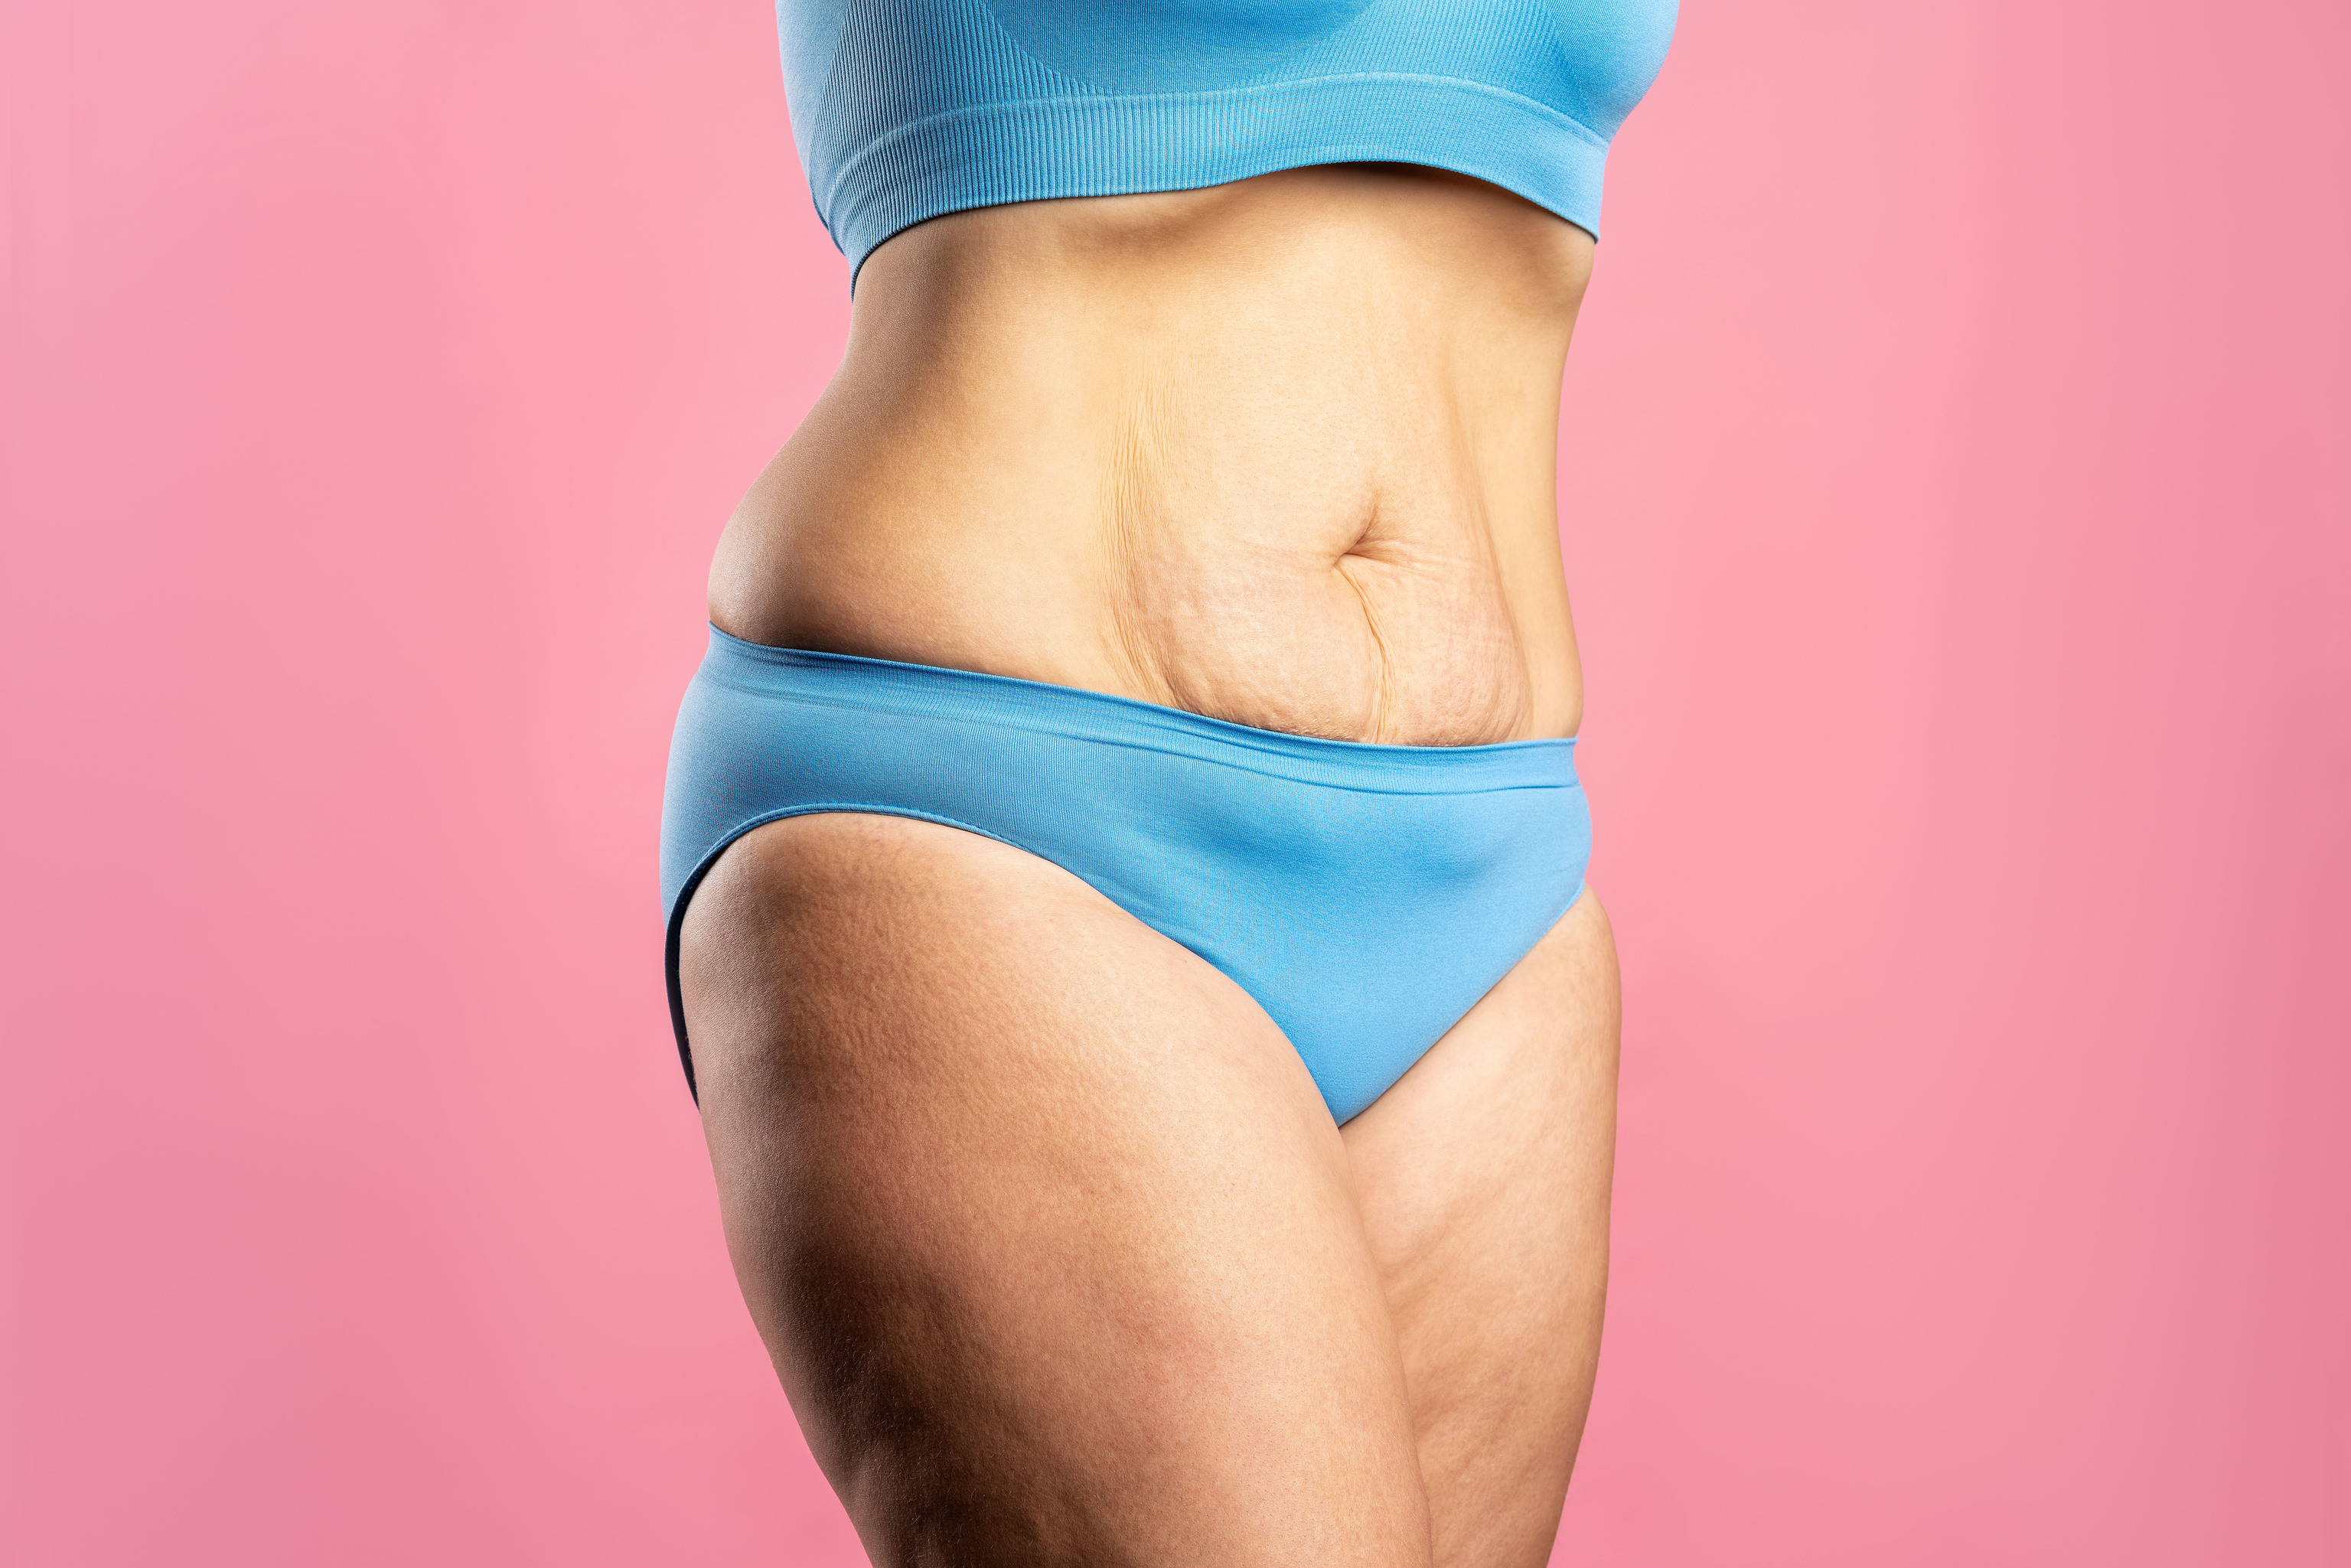 Cómo lograr calidad estética en abdomen: ¡Plano y tonificado!